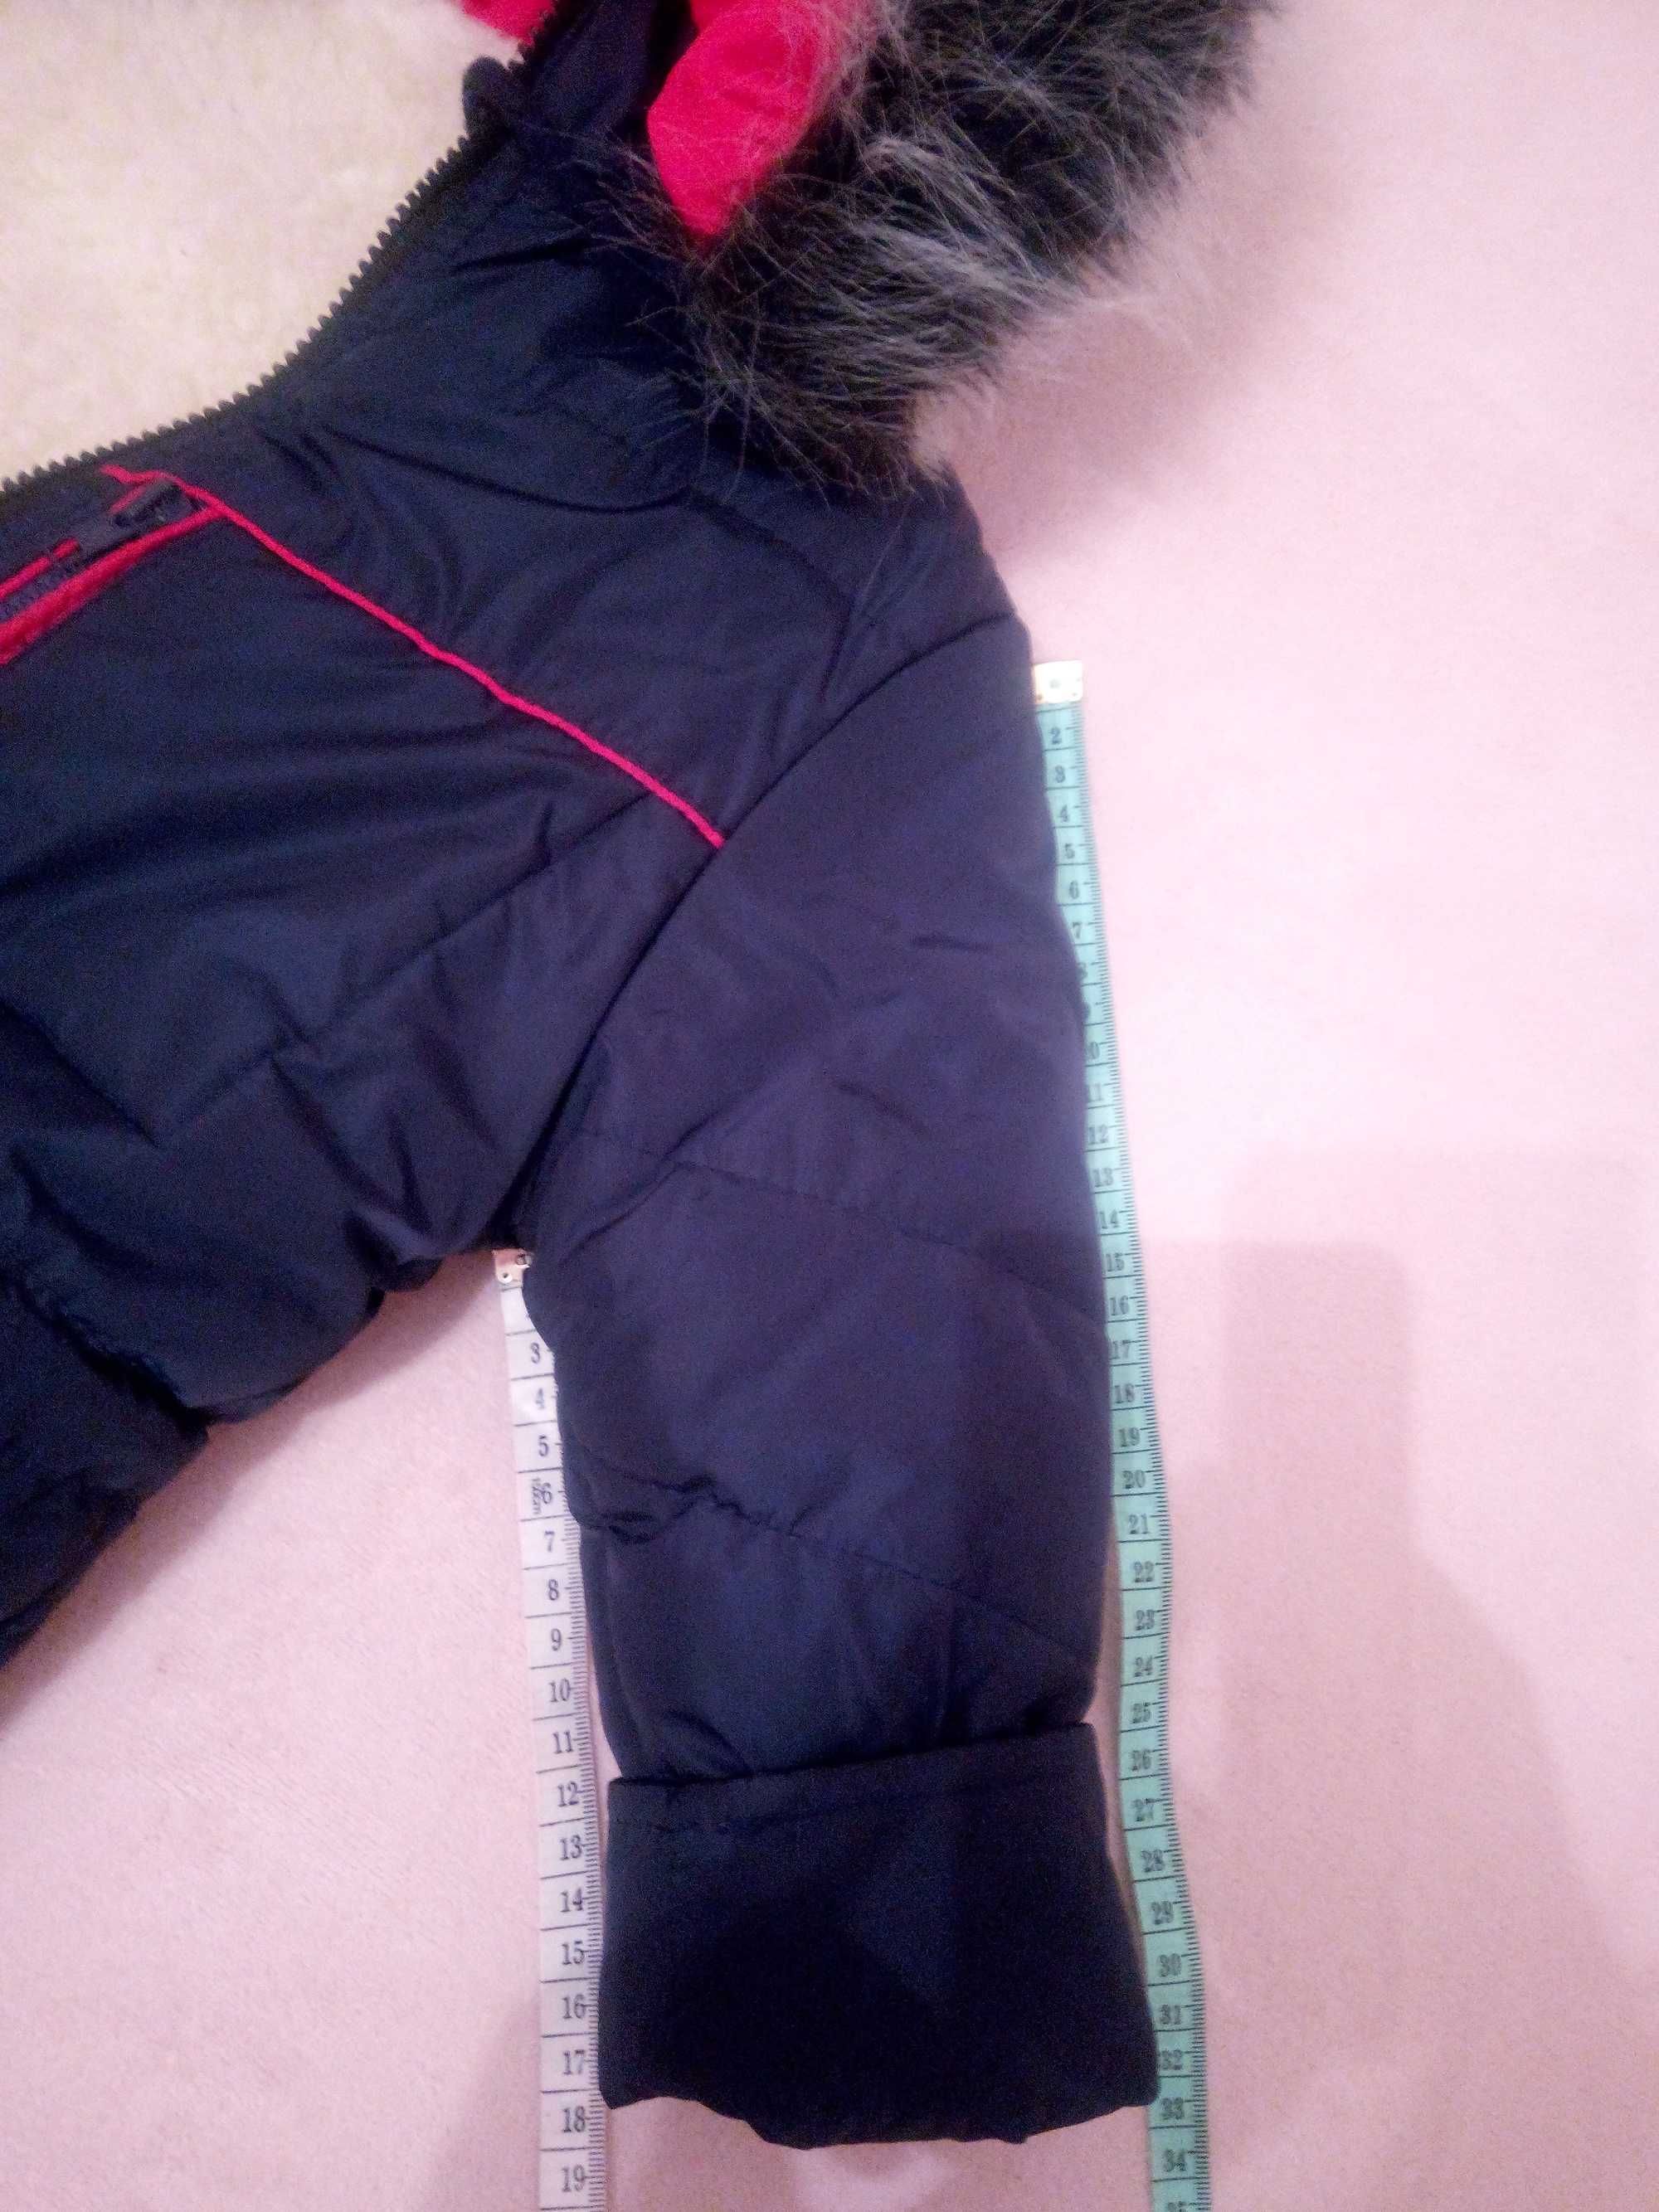 Зимова тепла куртка 92 р. + подарунок комбінезон Oshkosh 2T